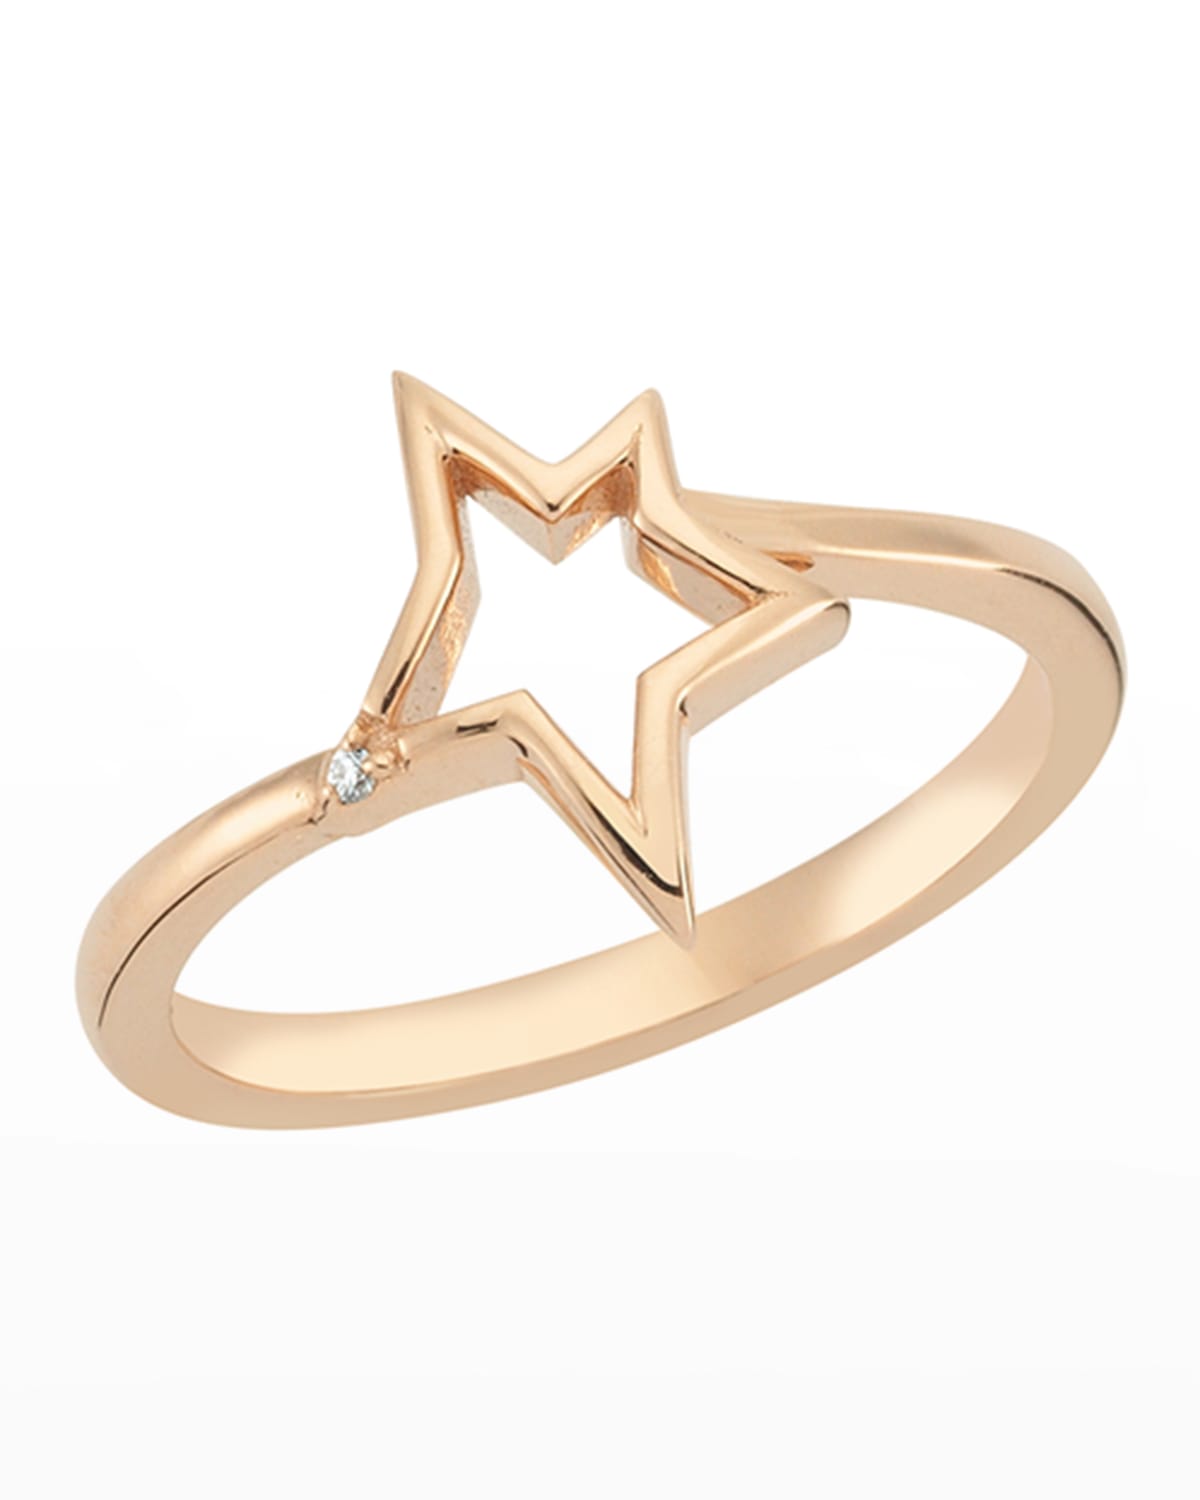 BeeGoddess 14k Rose Gold Sirius Star Ring, Size 7